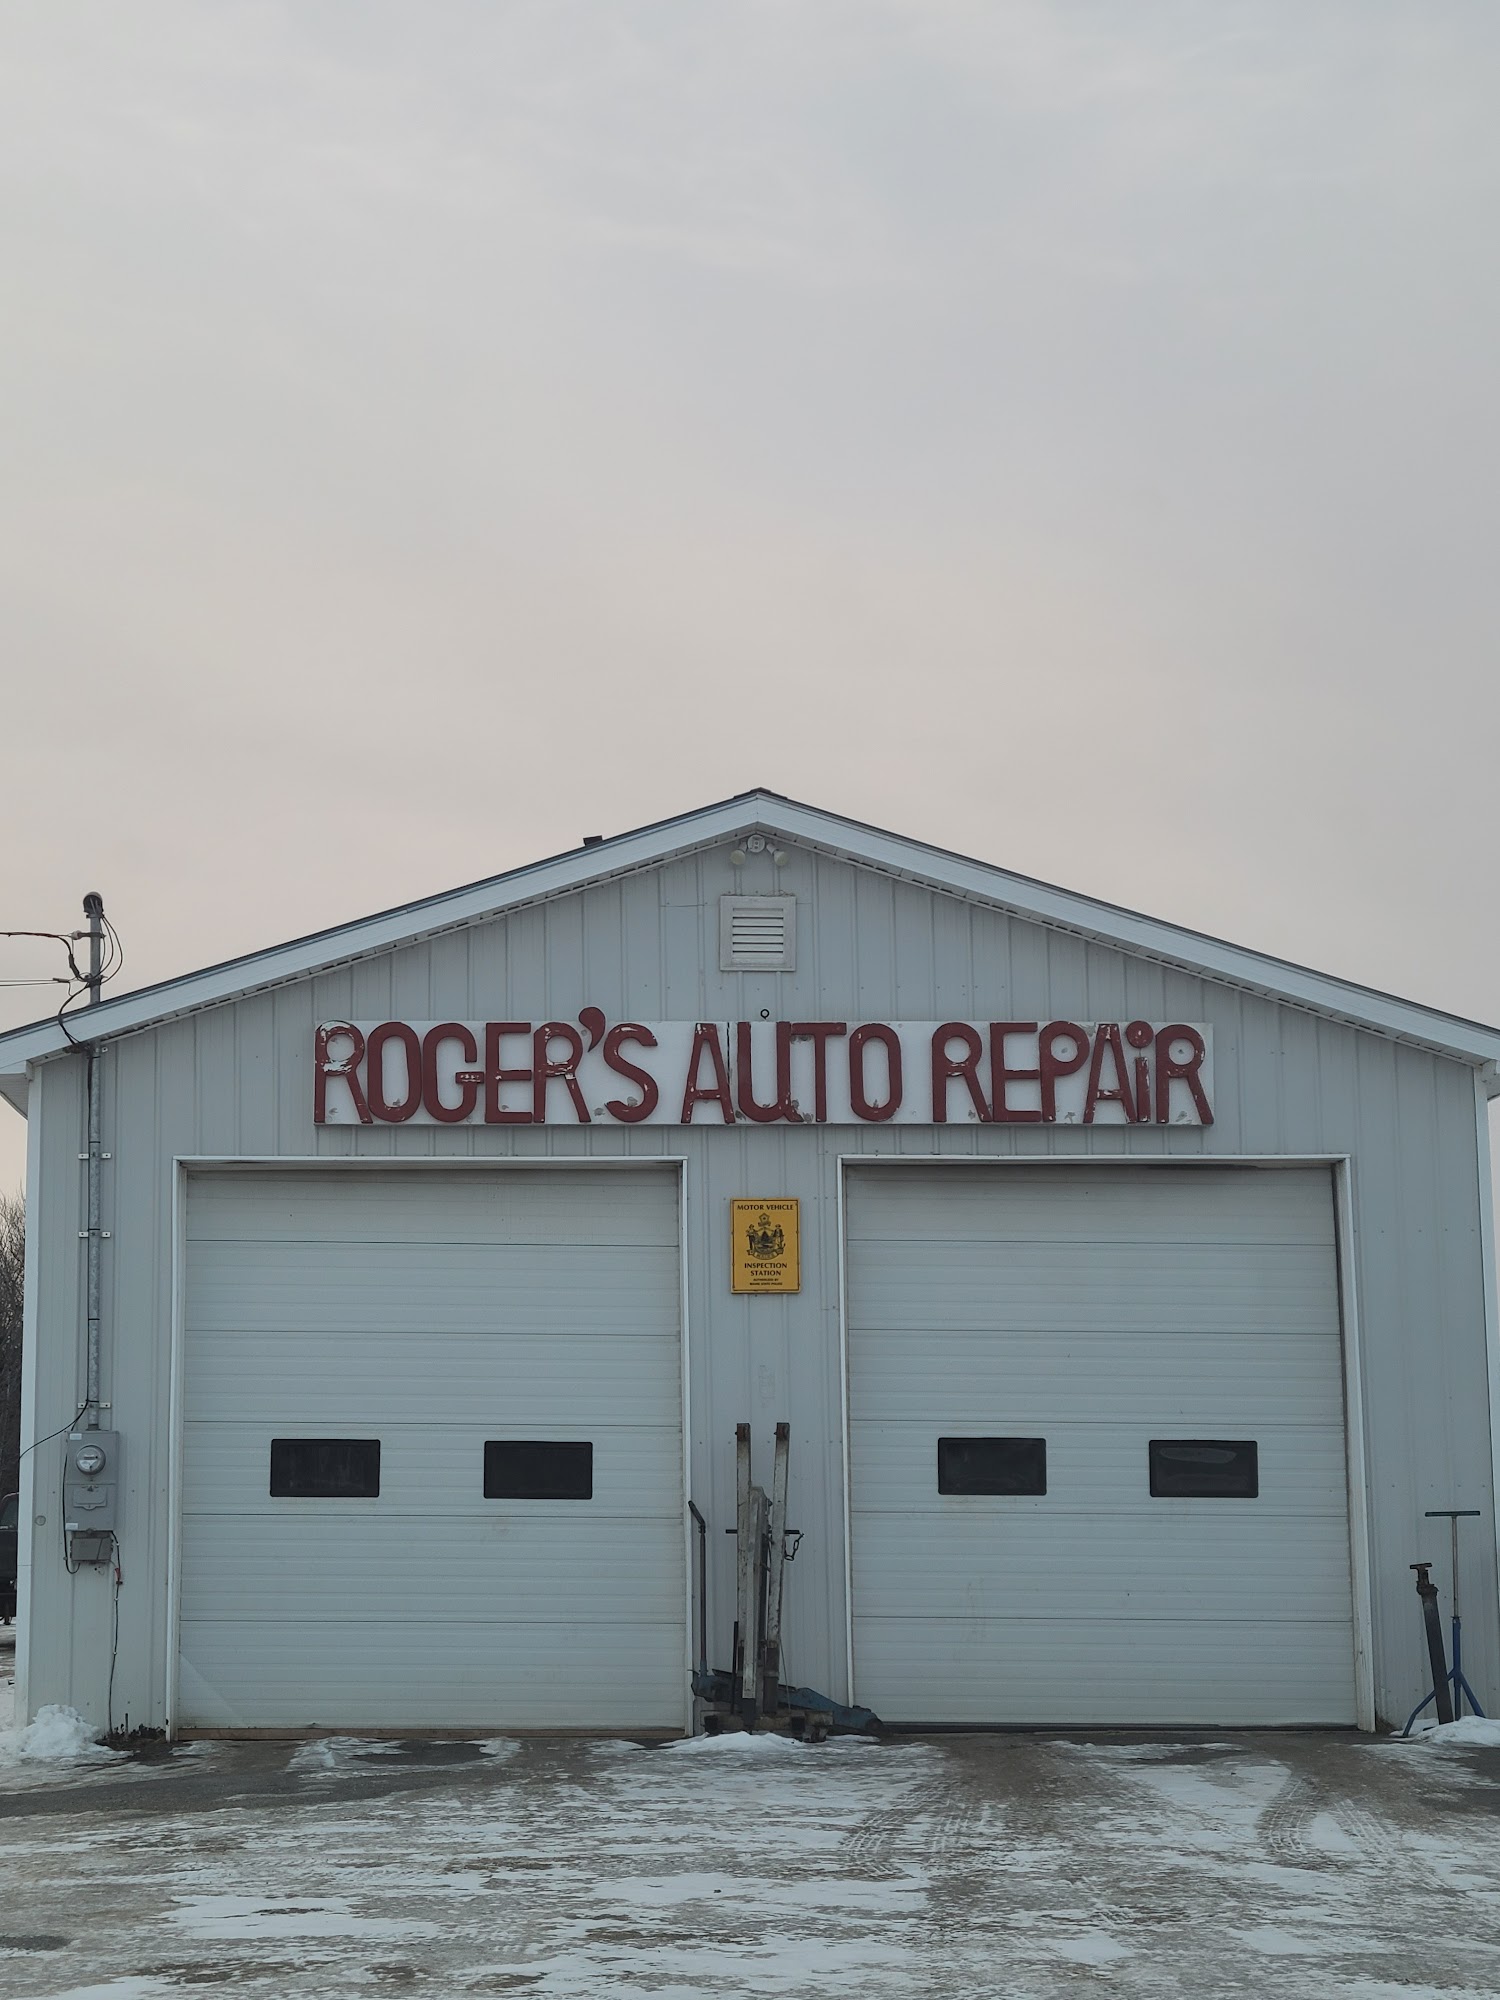 Rogers Auto Repair 277 Presque Isle Road, Fort Fairfield Maine 04742